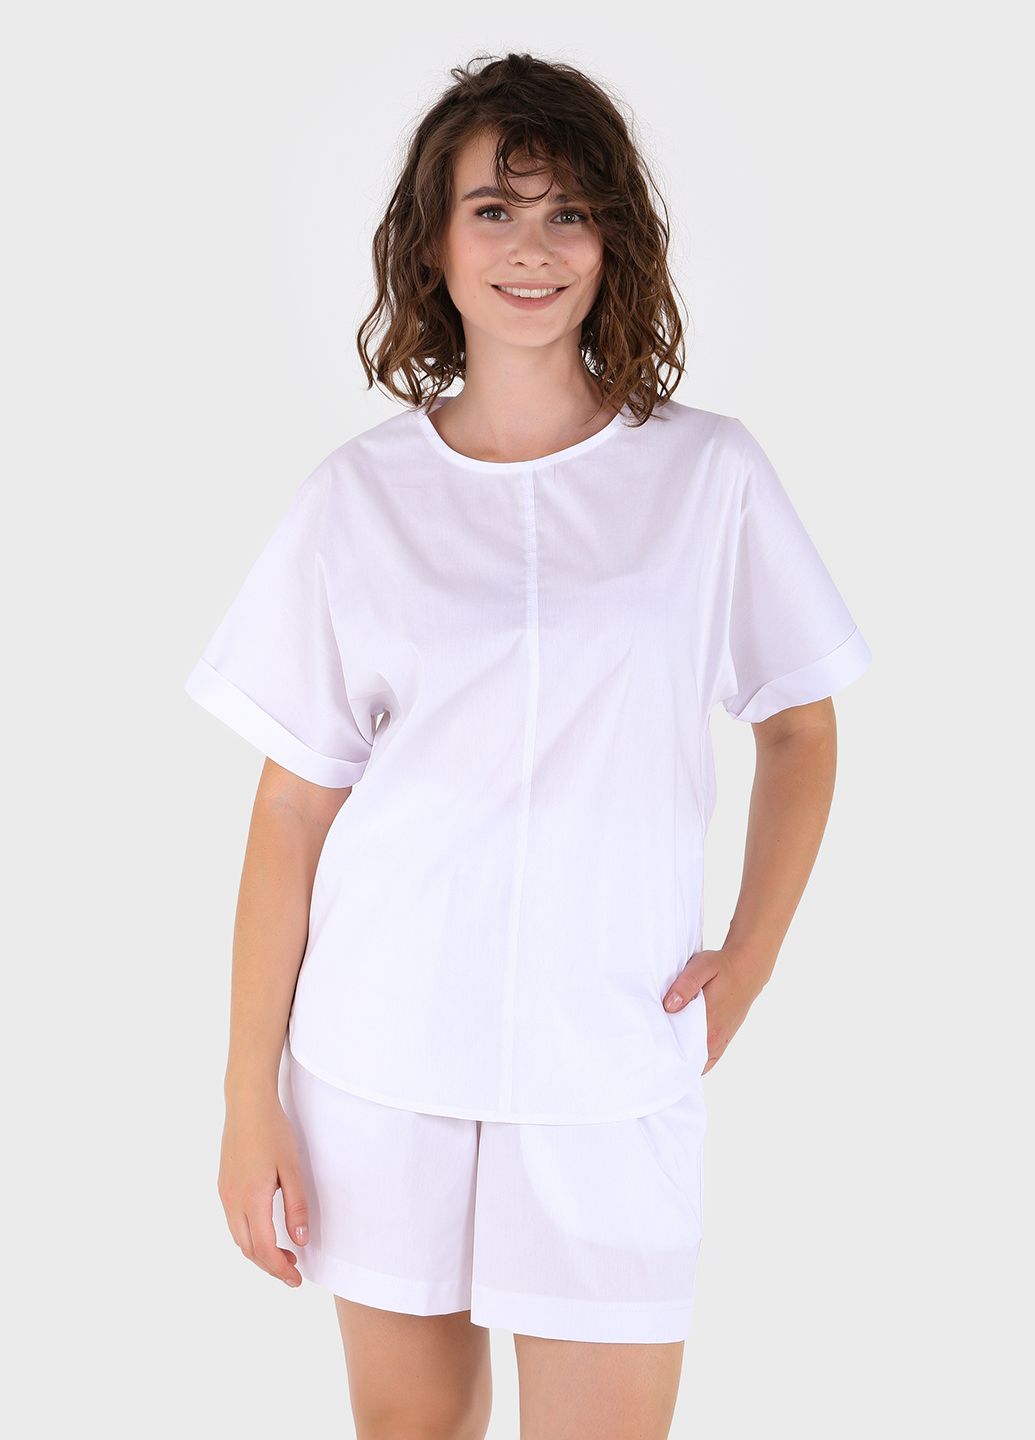 Купить Хлопковые шорты женские бермуды белого цвета Merlini Перуджа 300000051, размер 42-44 в интернет-магазине